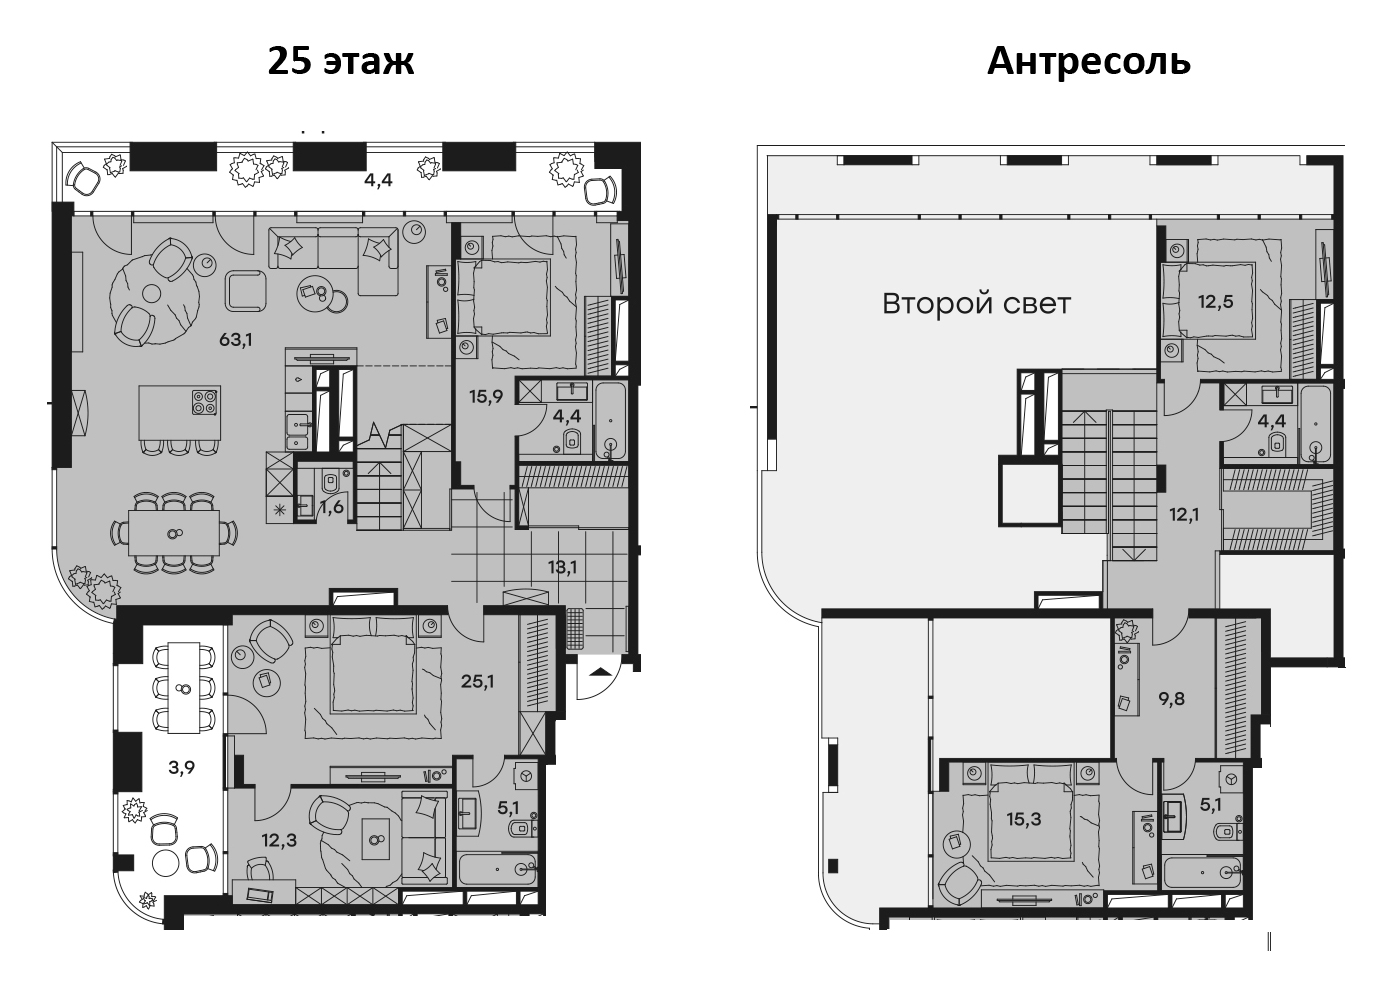 5-комнатная, 208.7 м²– 2